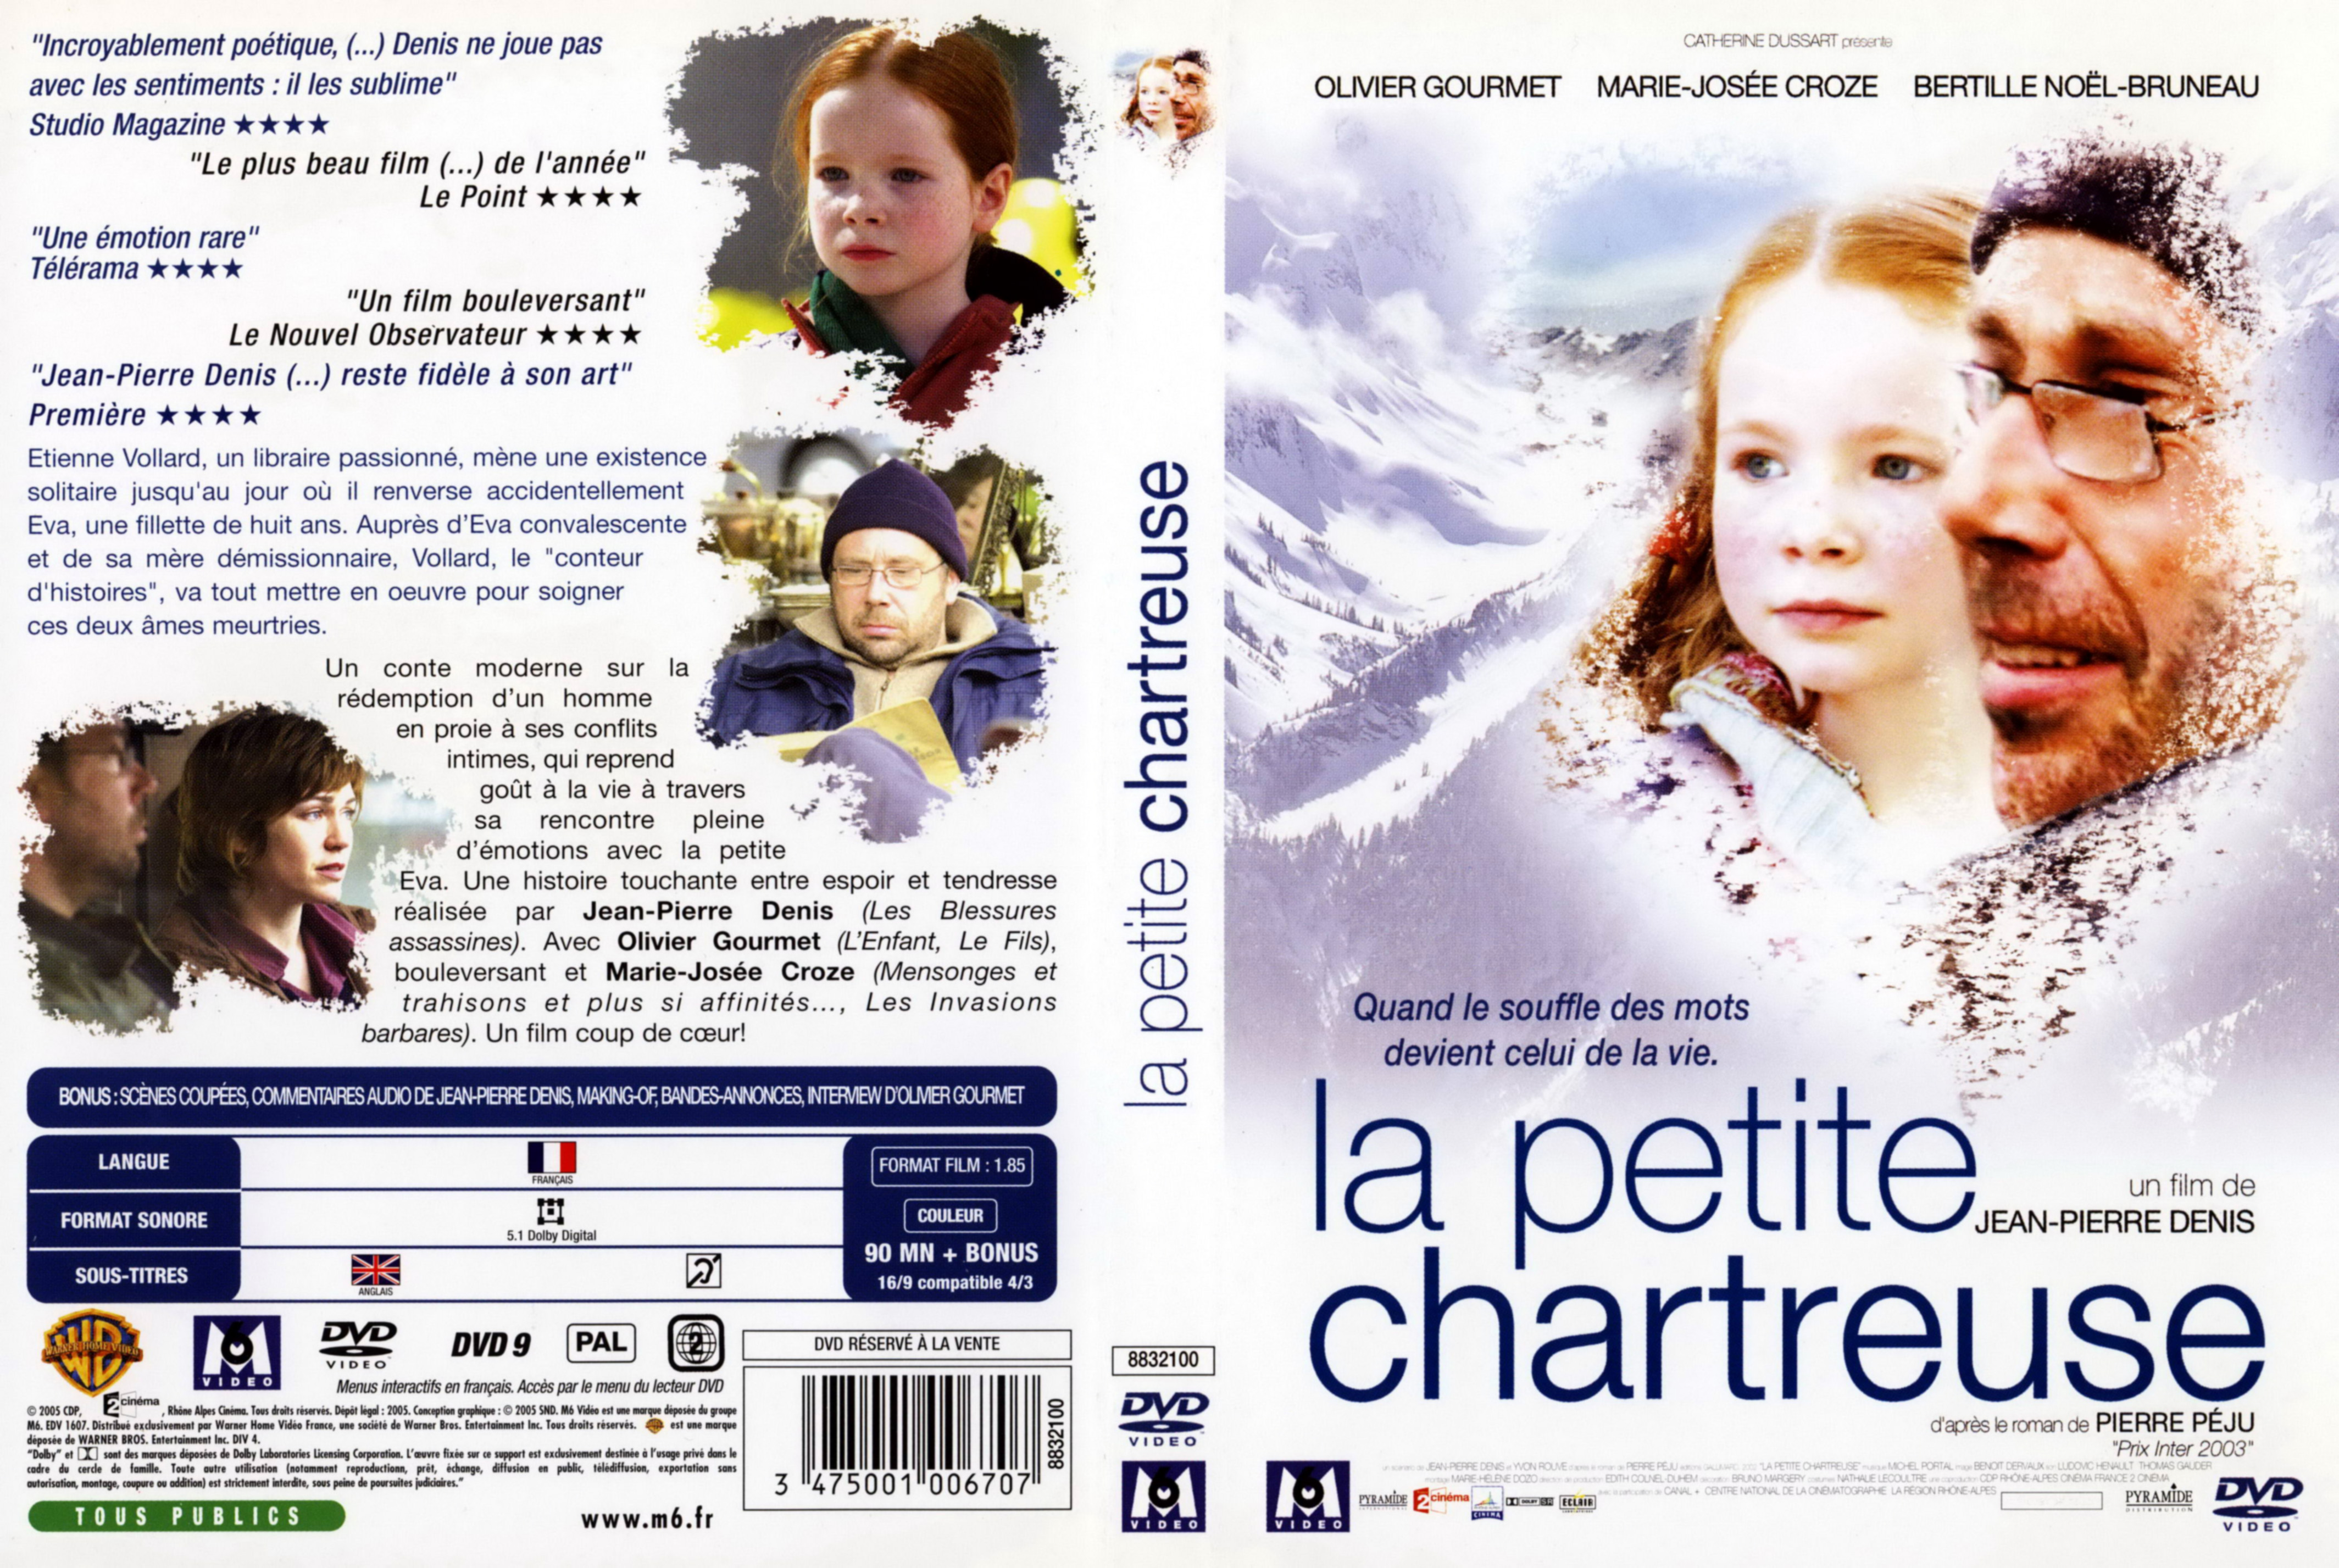 Jaquette DVD La petite chartreuse